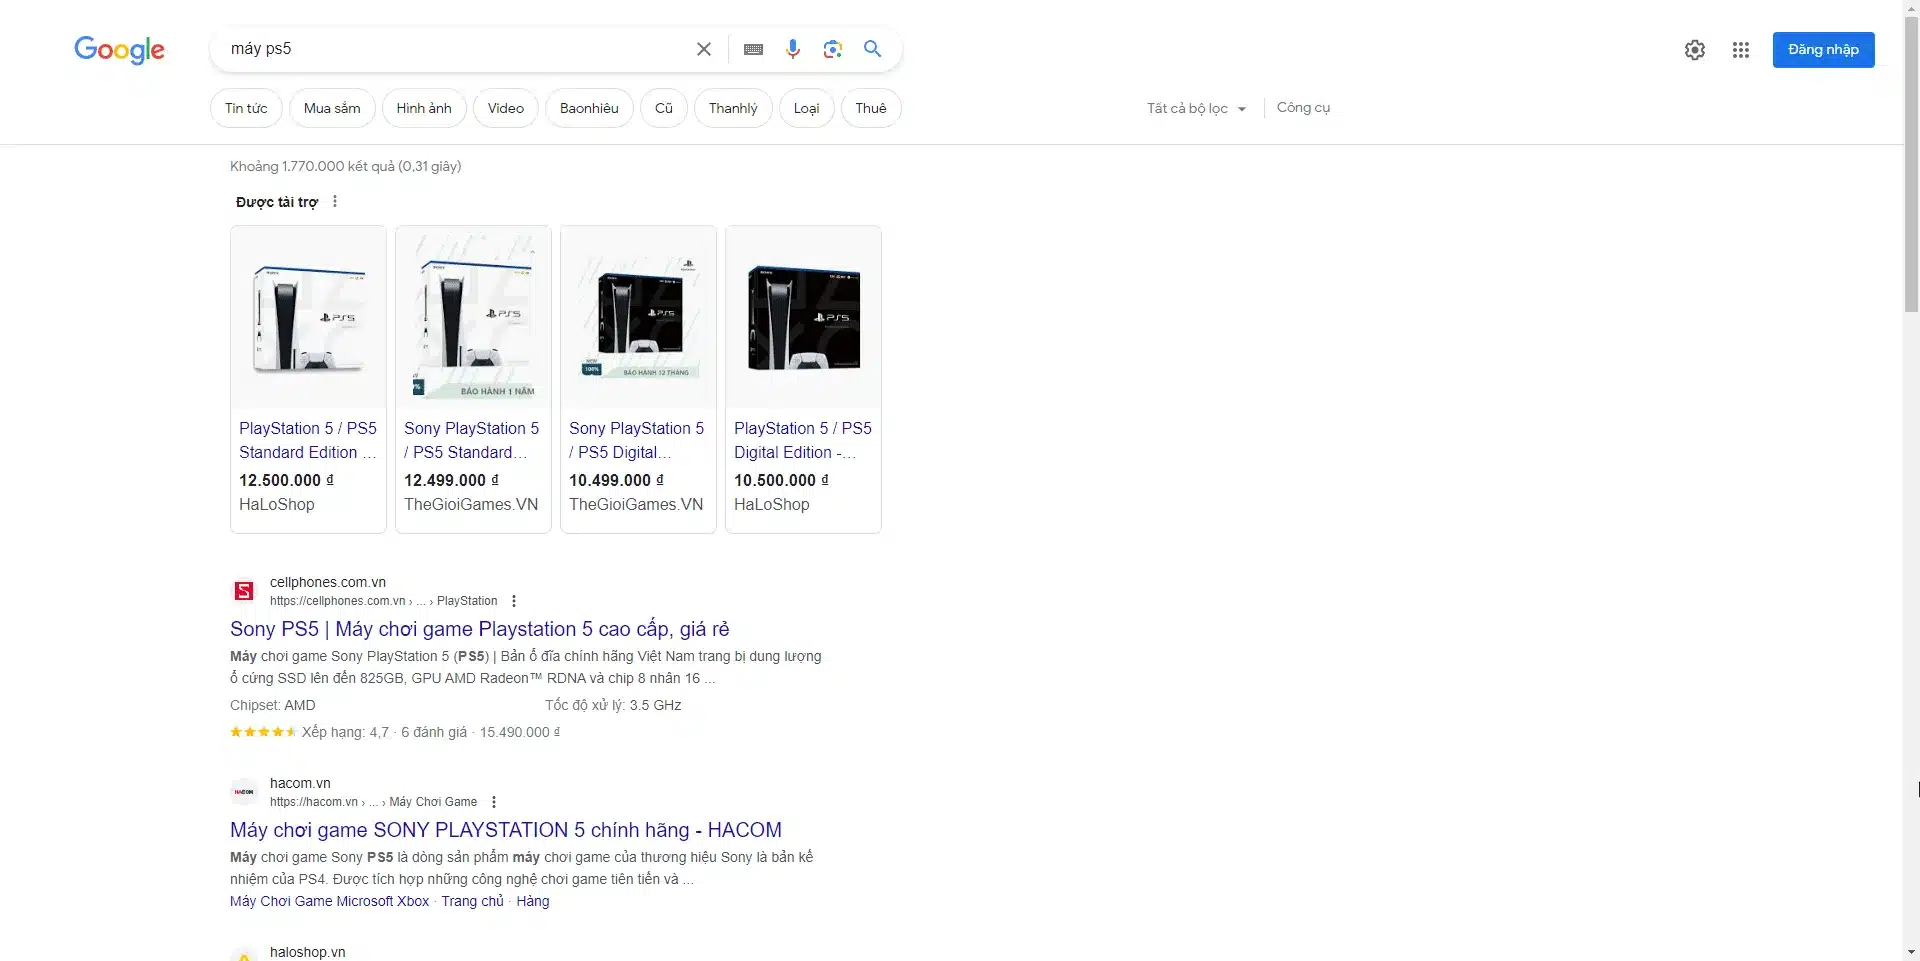 Vị trí hiển thị của quảng cáo Google Shopping trên các kết quả tìm kiếm tự nhiên